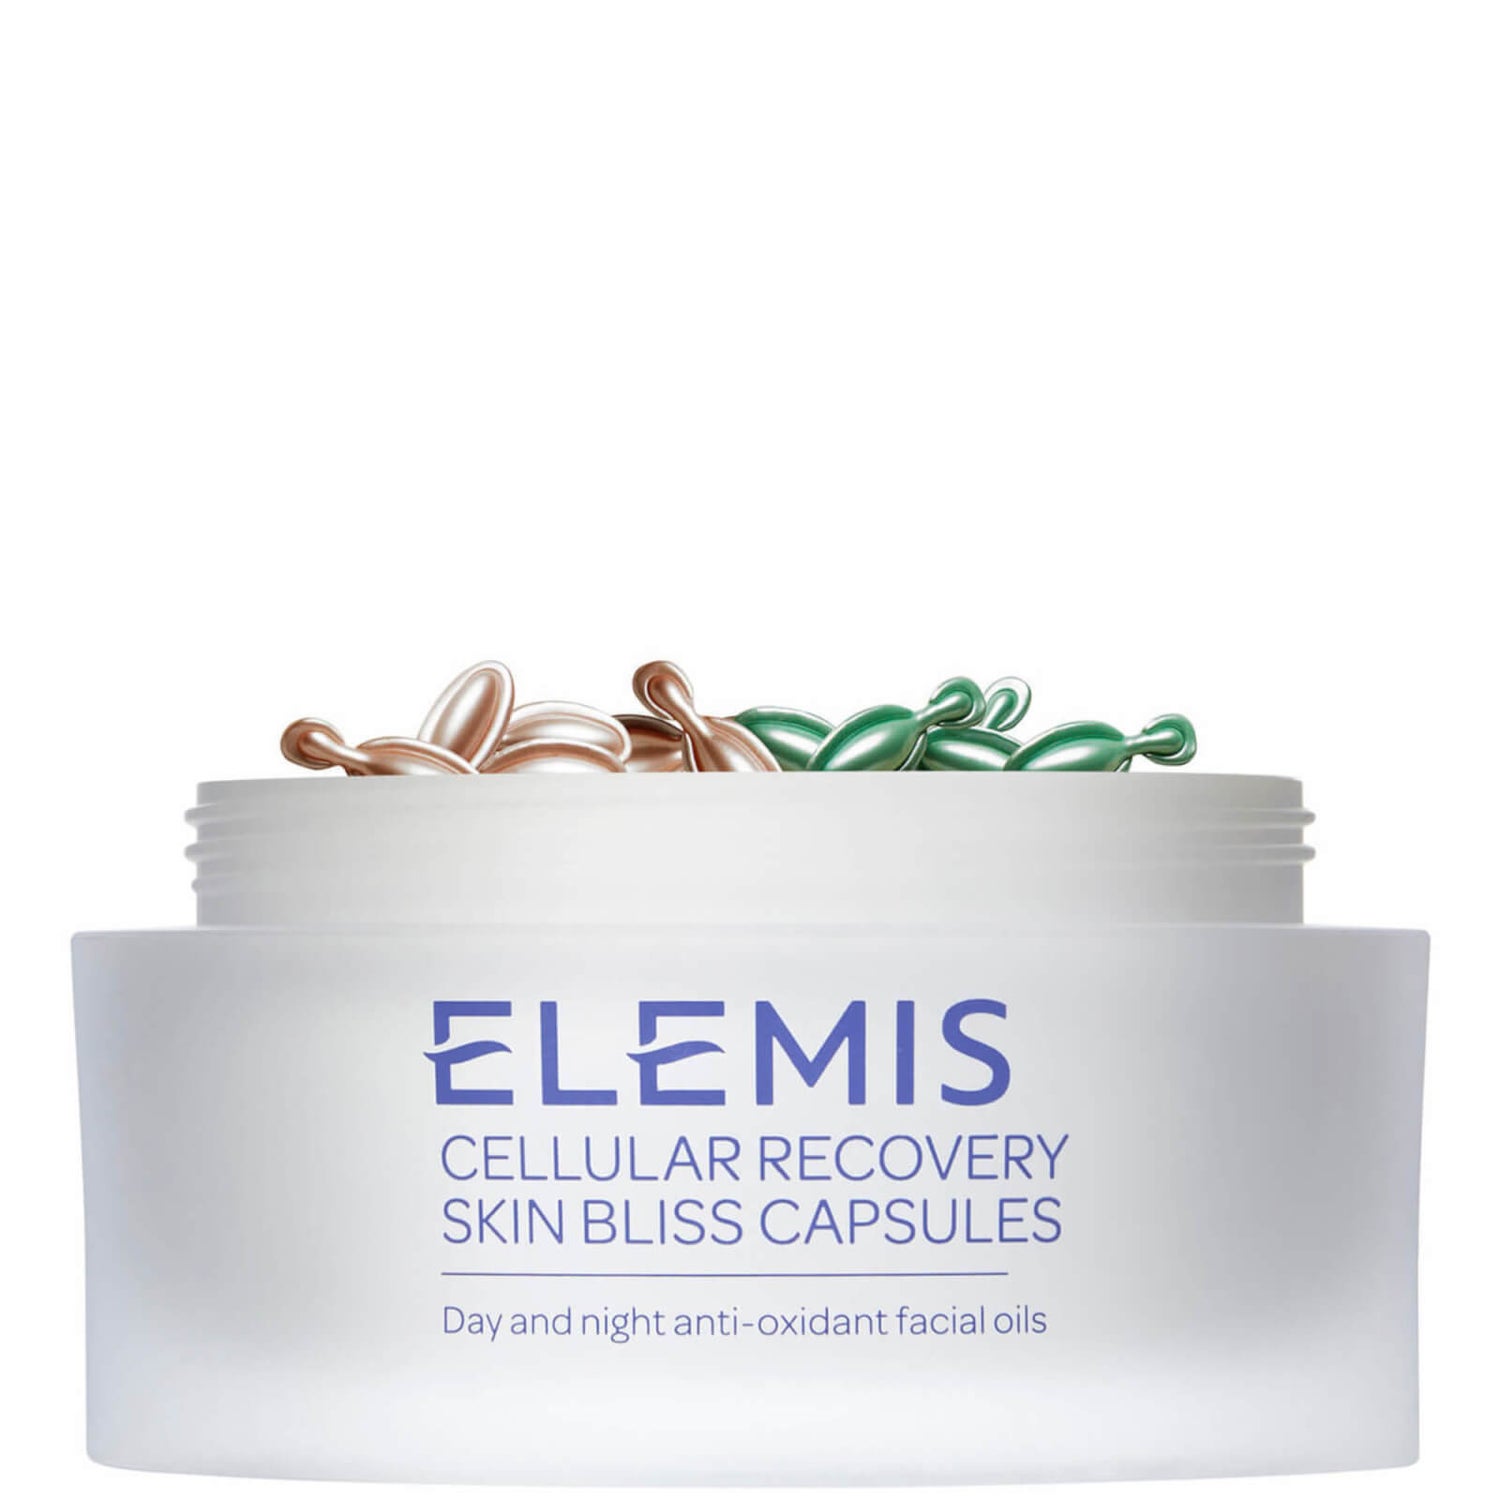 Elemis Cellular Recovery Capsules - 60 Capsules